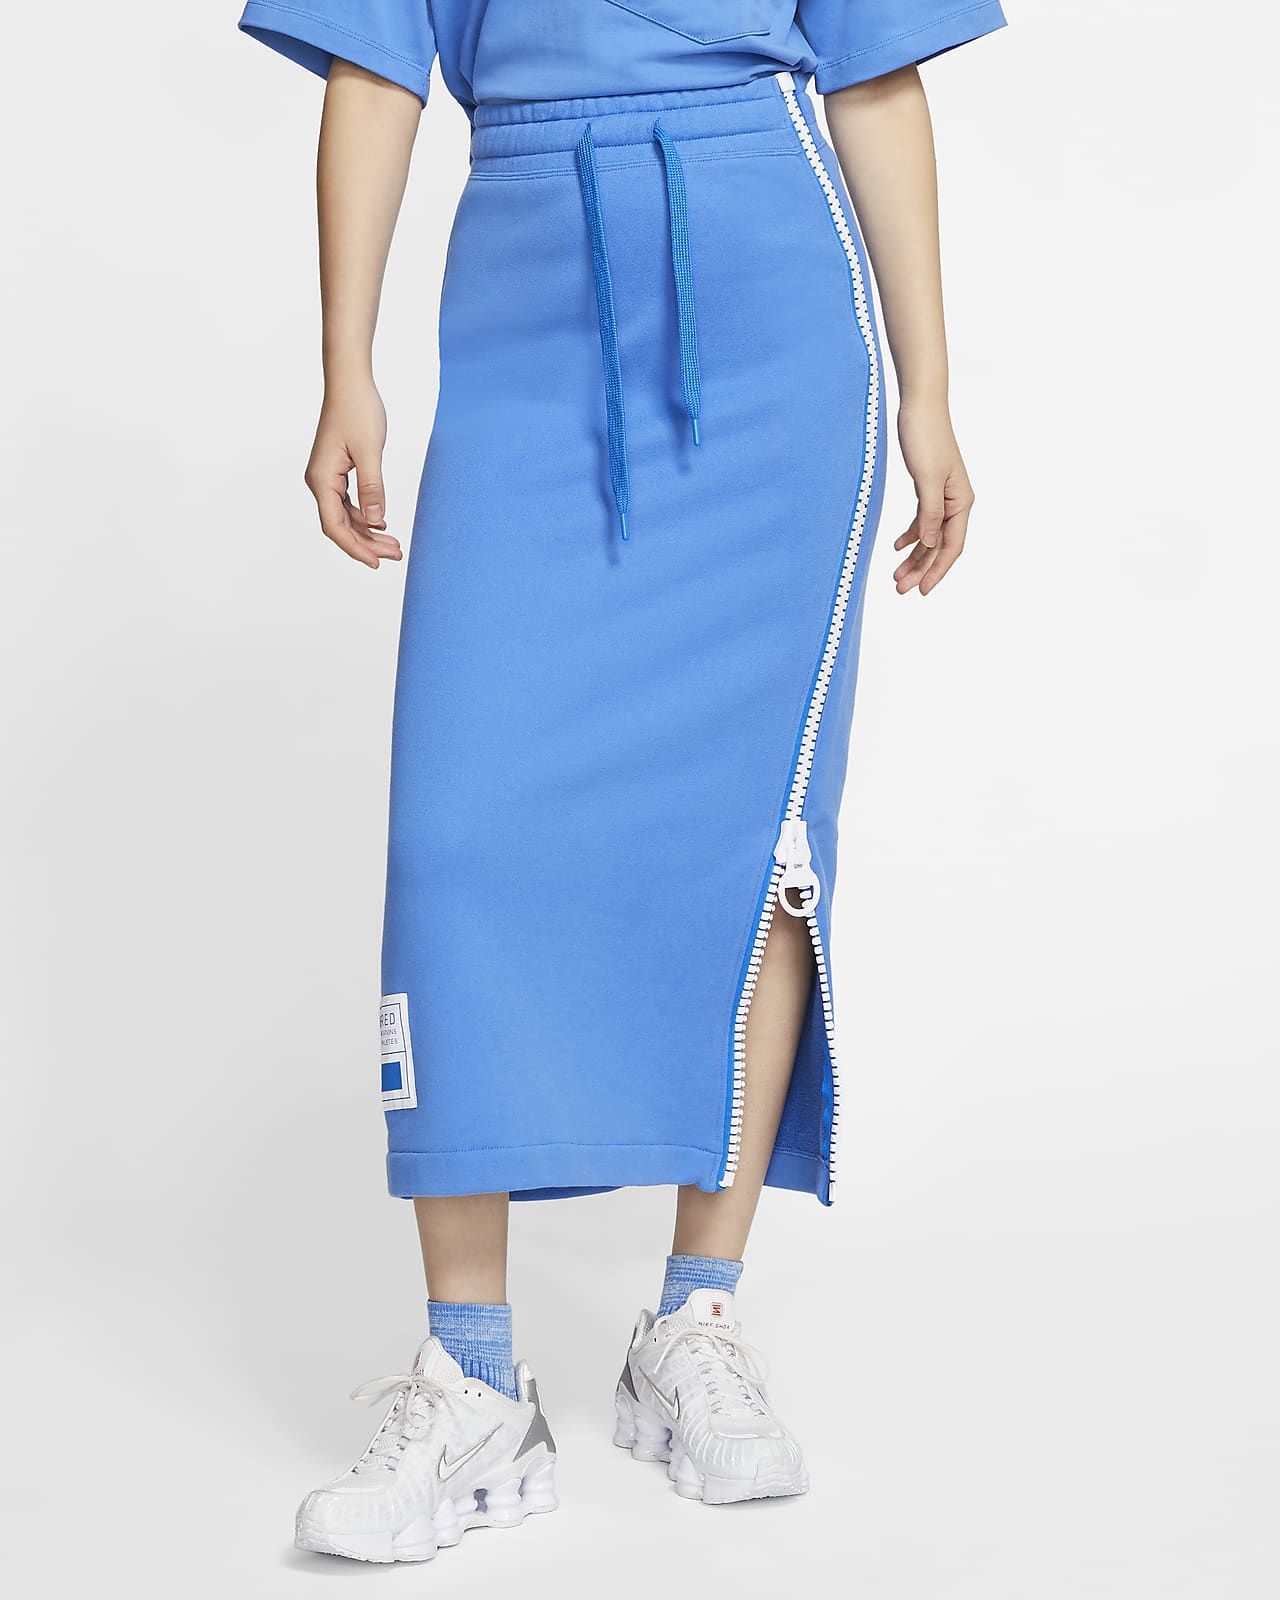 Nike Sportswear NSW Women's Fleece Skirt